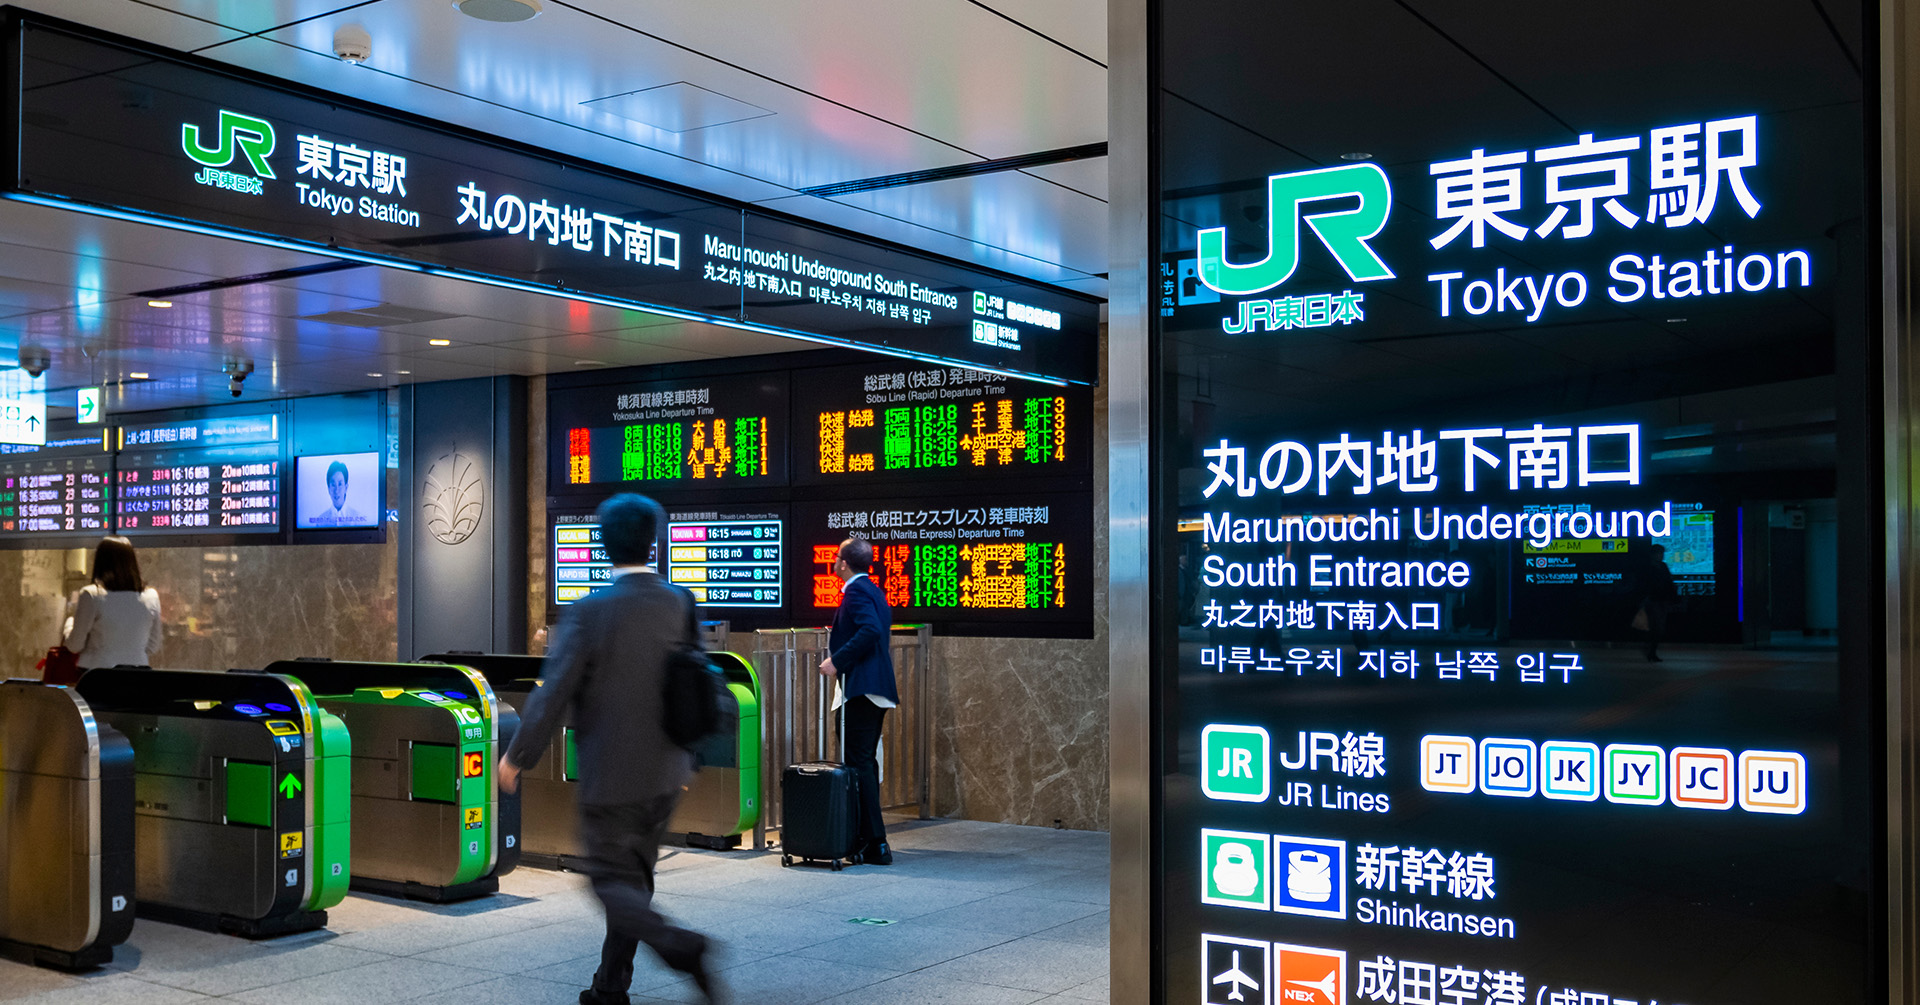  JR東日本グループは「JR 東日本グループカスタマーハラスメントに対する方針」を策定し、4月26日にその内容を発表しました。 安全で質の高いサービスを提供するために、顧客からの意見や要望に真摯に対応する一方で、カスタマーハラスメントには毅然とした対応を行う企業姿勢を示しています。